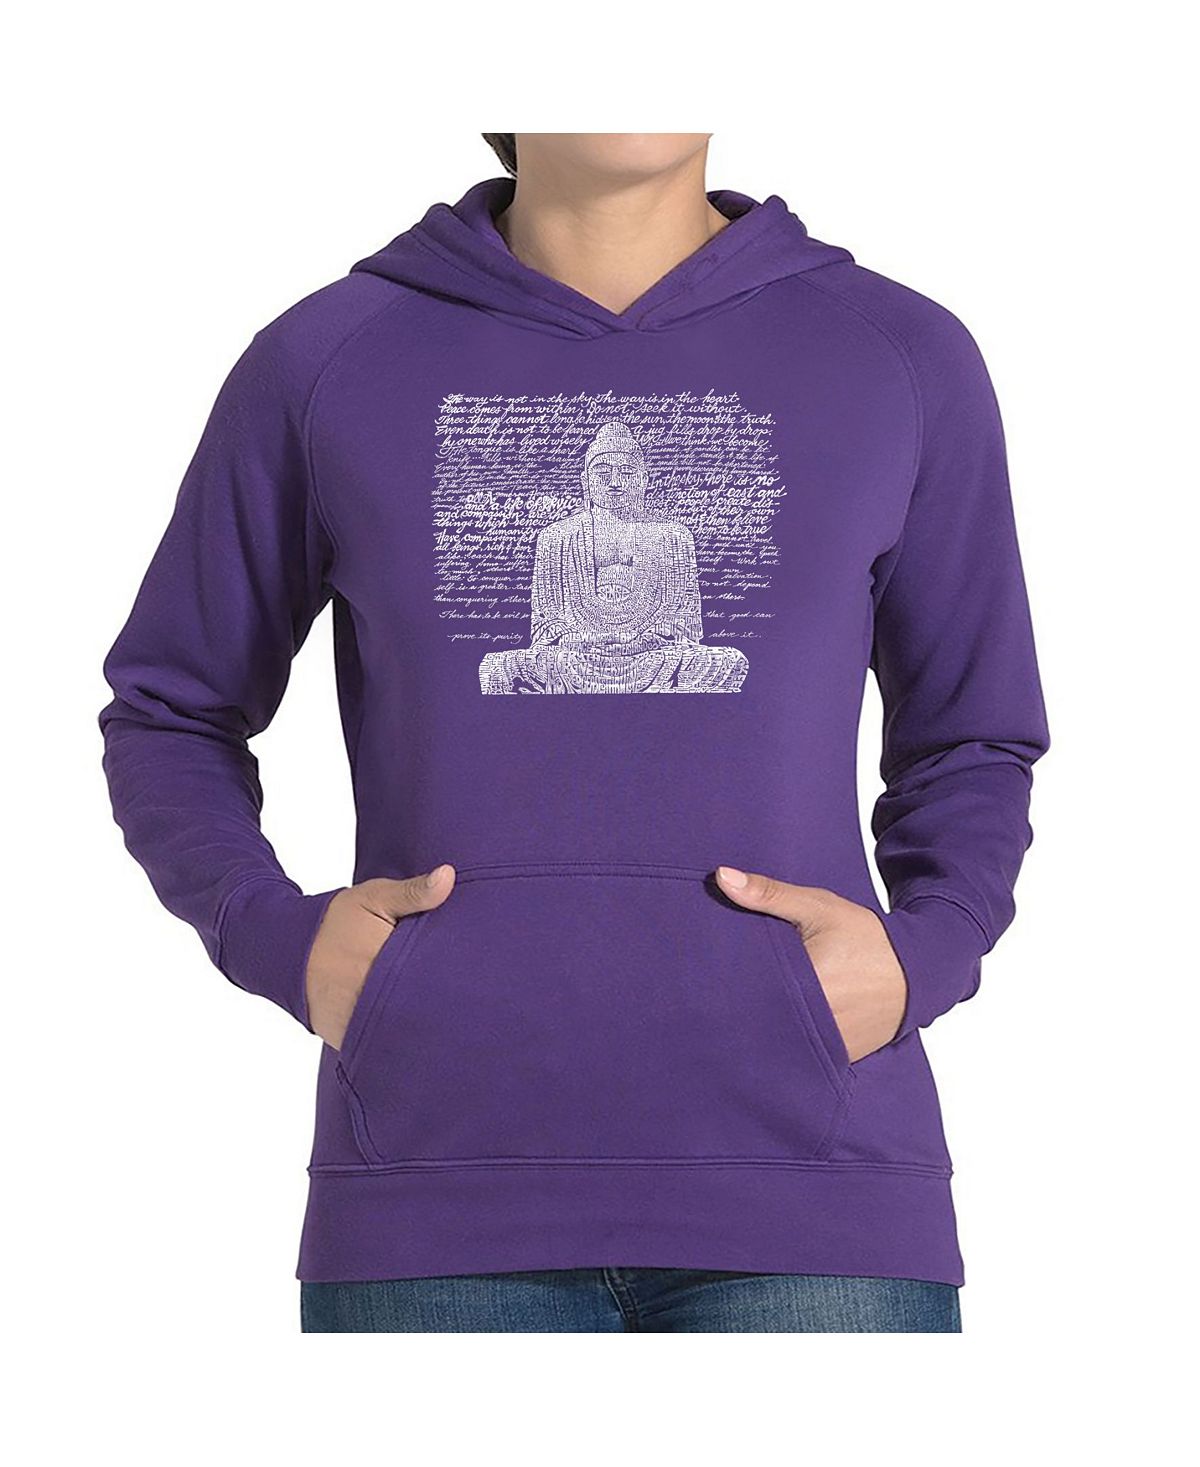 Женская толстовка с капюшоном word art - дзен будда LA Pop Art, фиолетовый